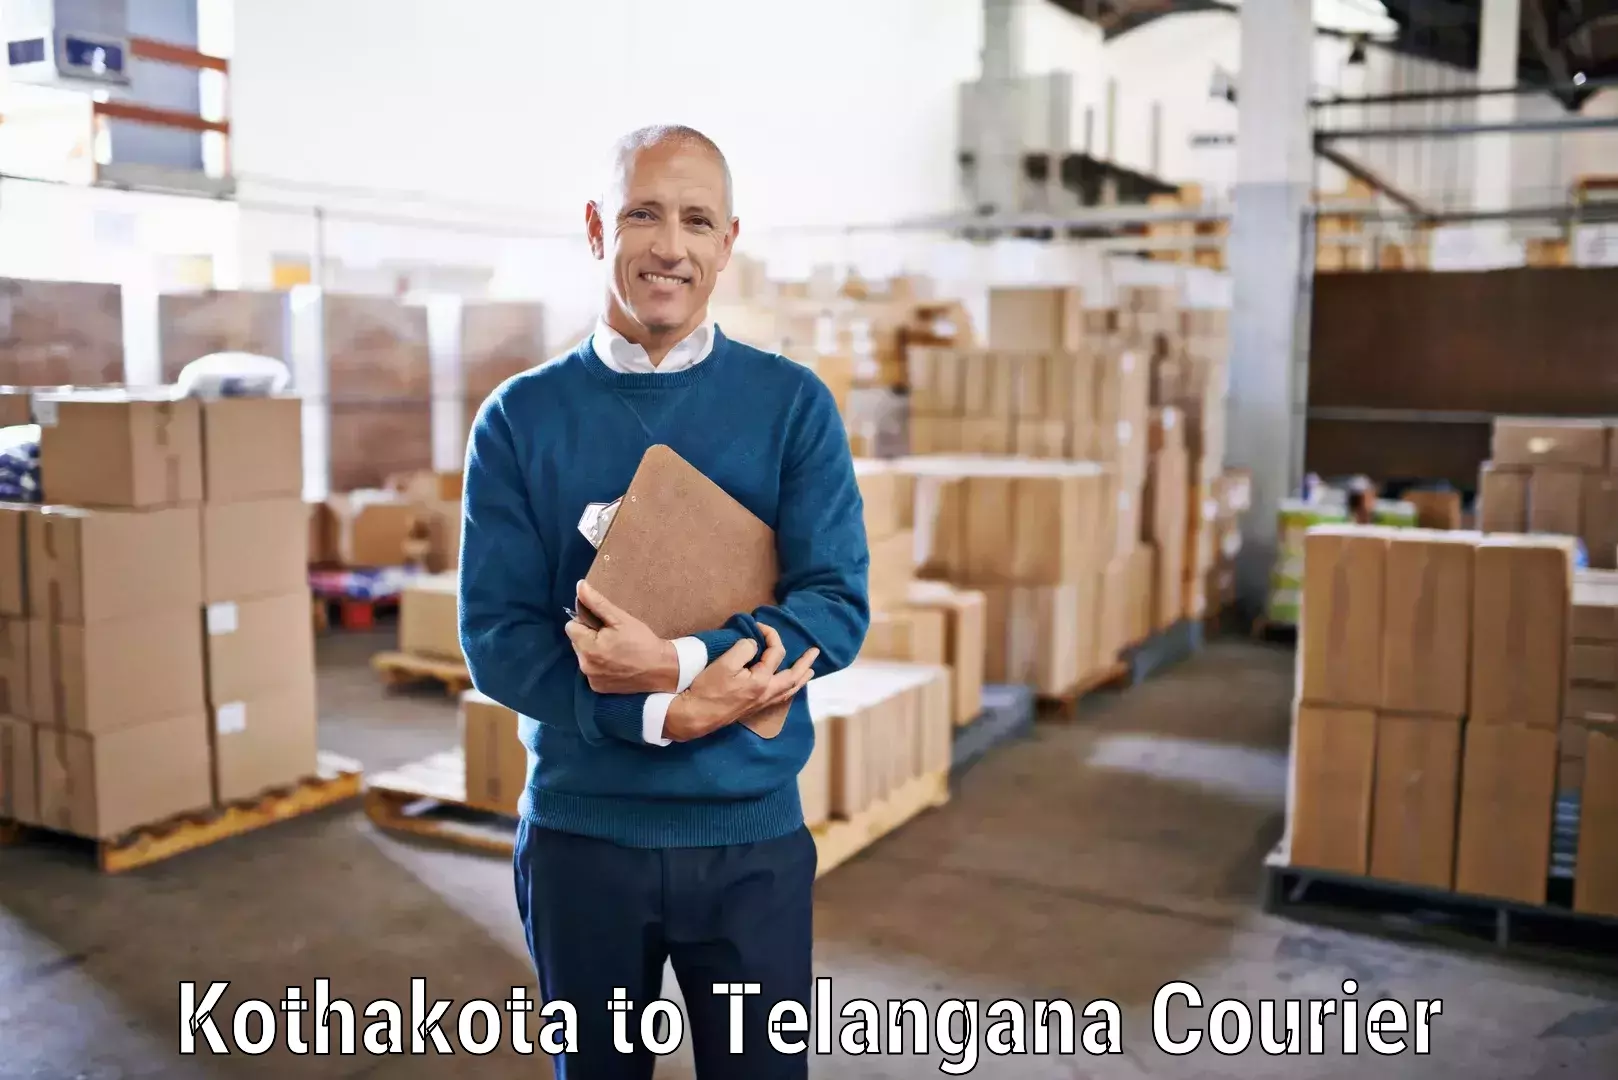 Custom courier packaging Kothakota to Bellal Tarafa Bodhan